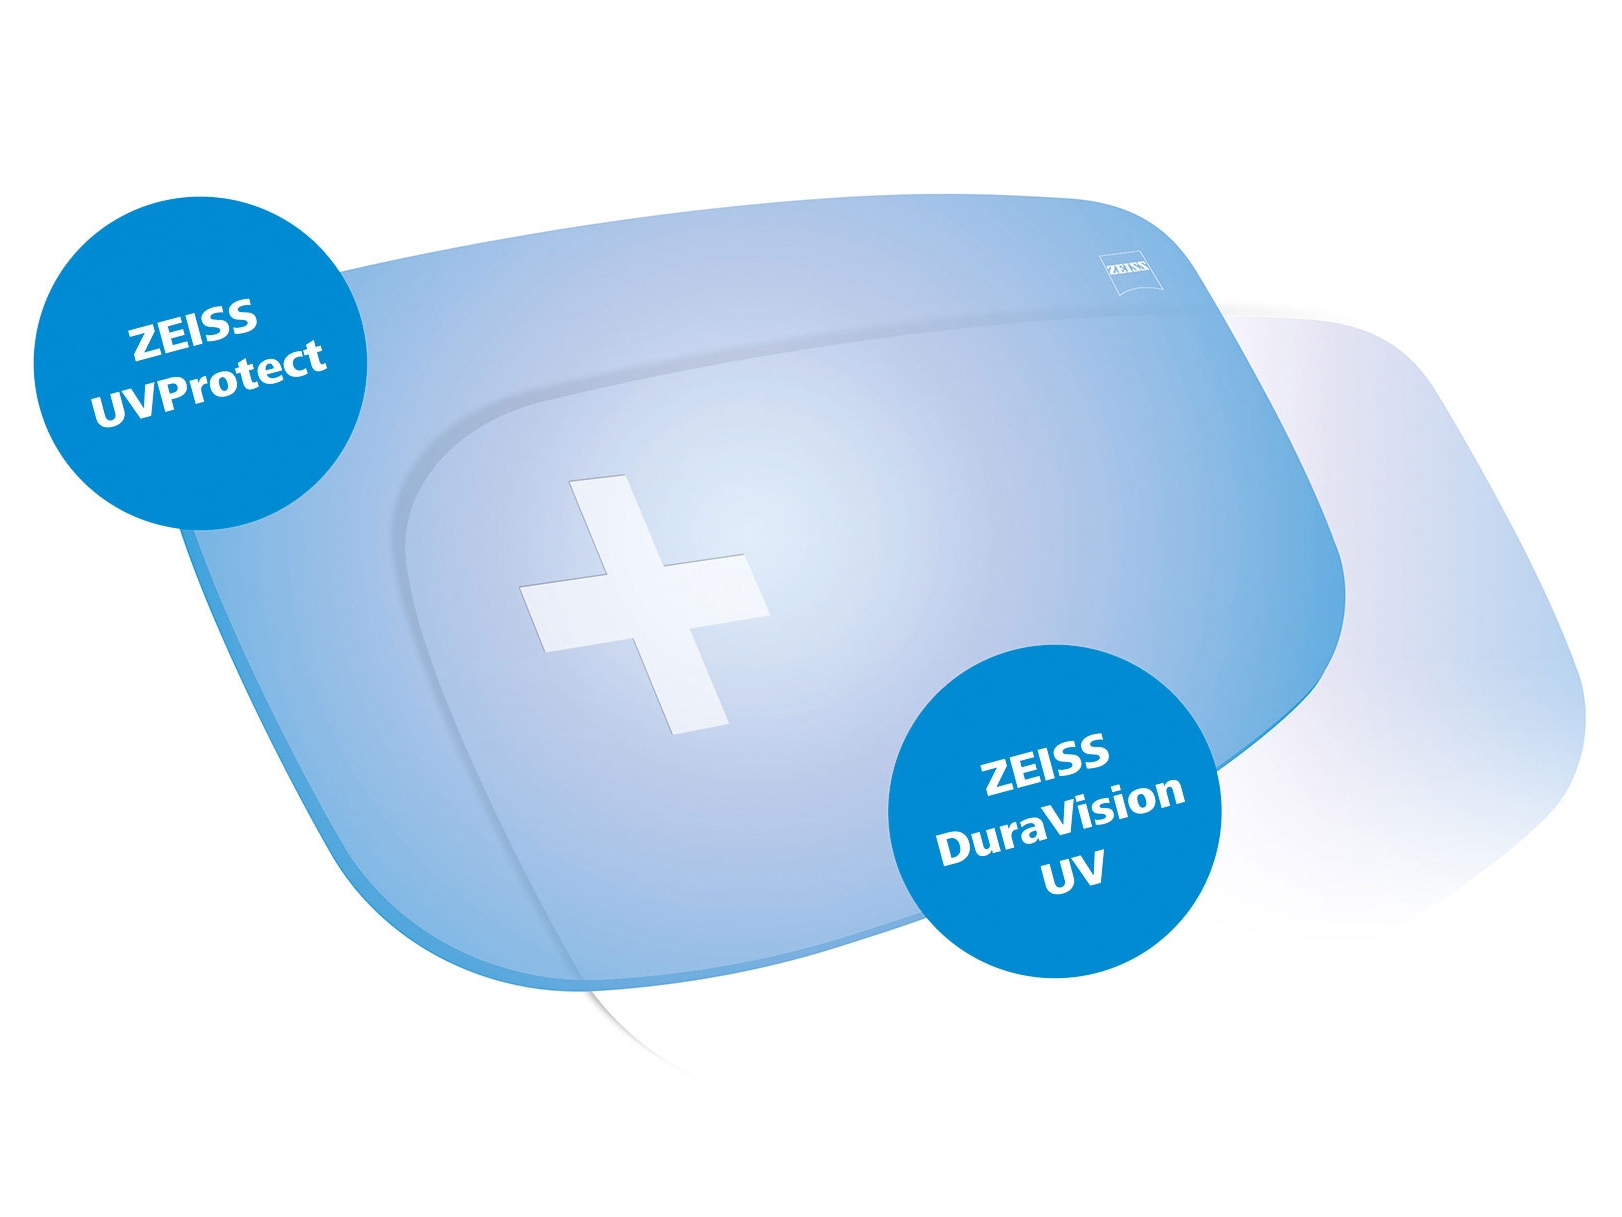 Tutte le lenti ZEISS offrono di serie la protezione UV su tutti i lati. Il grafico mostra due soluzioni.